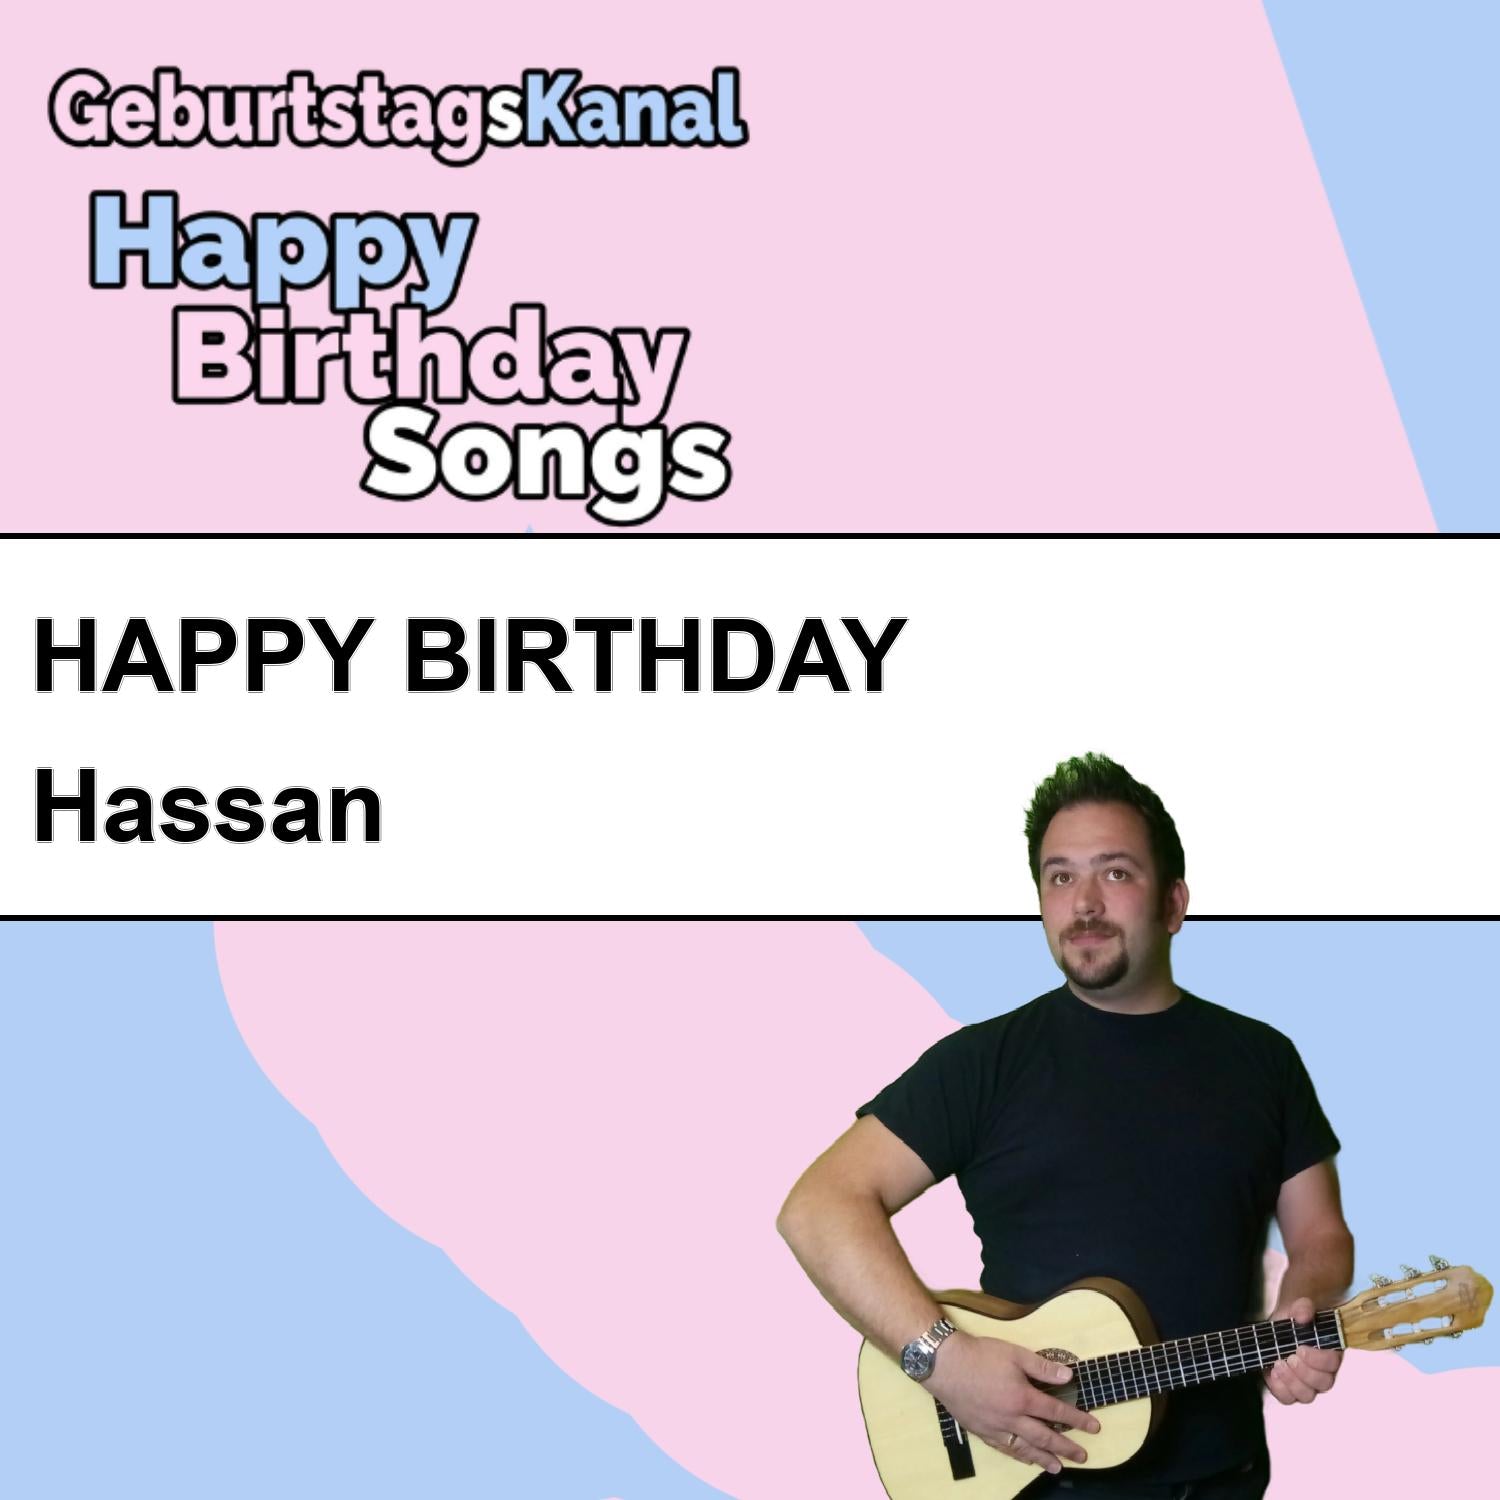 Produktbild Happy Birthday to you Hassan mit Wunschgrußbotschaft